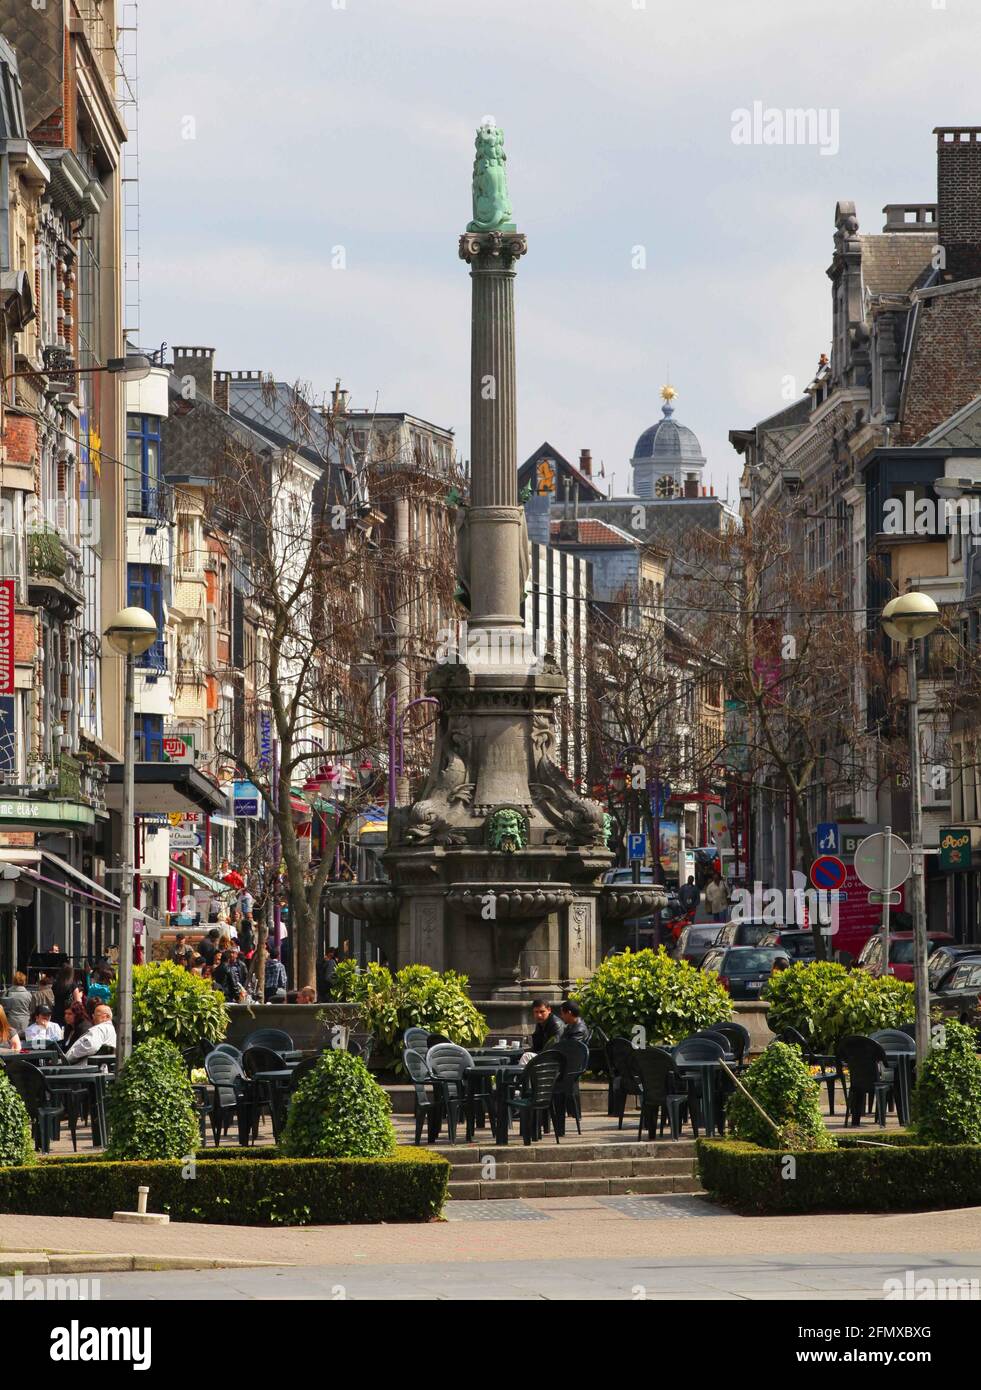 Verviers, Stadt in der Wallonie in Belgien, besticht u. a. durch seine Haeuserzeilen aus der Gruenderzeit.  Verviers war bis weit ins 20. Jahrhundert Stock Photo